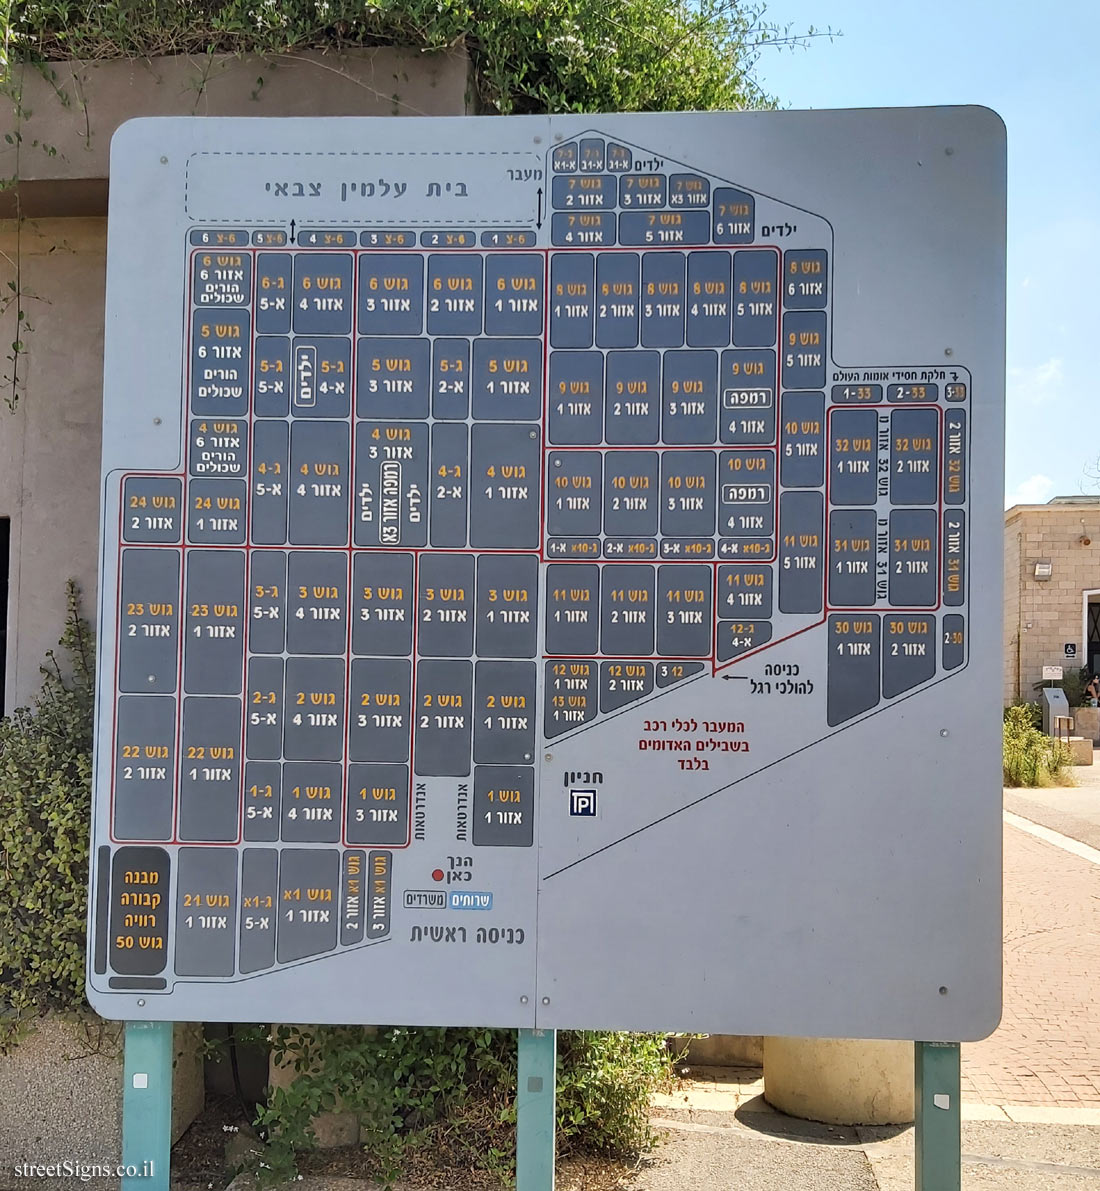 Tel Aviv - Kiryat Shaul Cemetery - Map of the cemetery